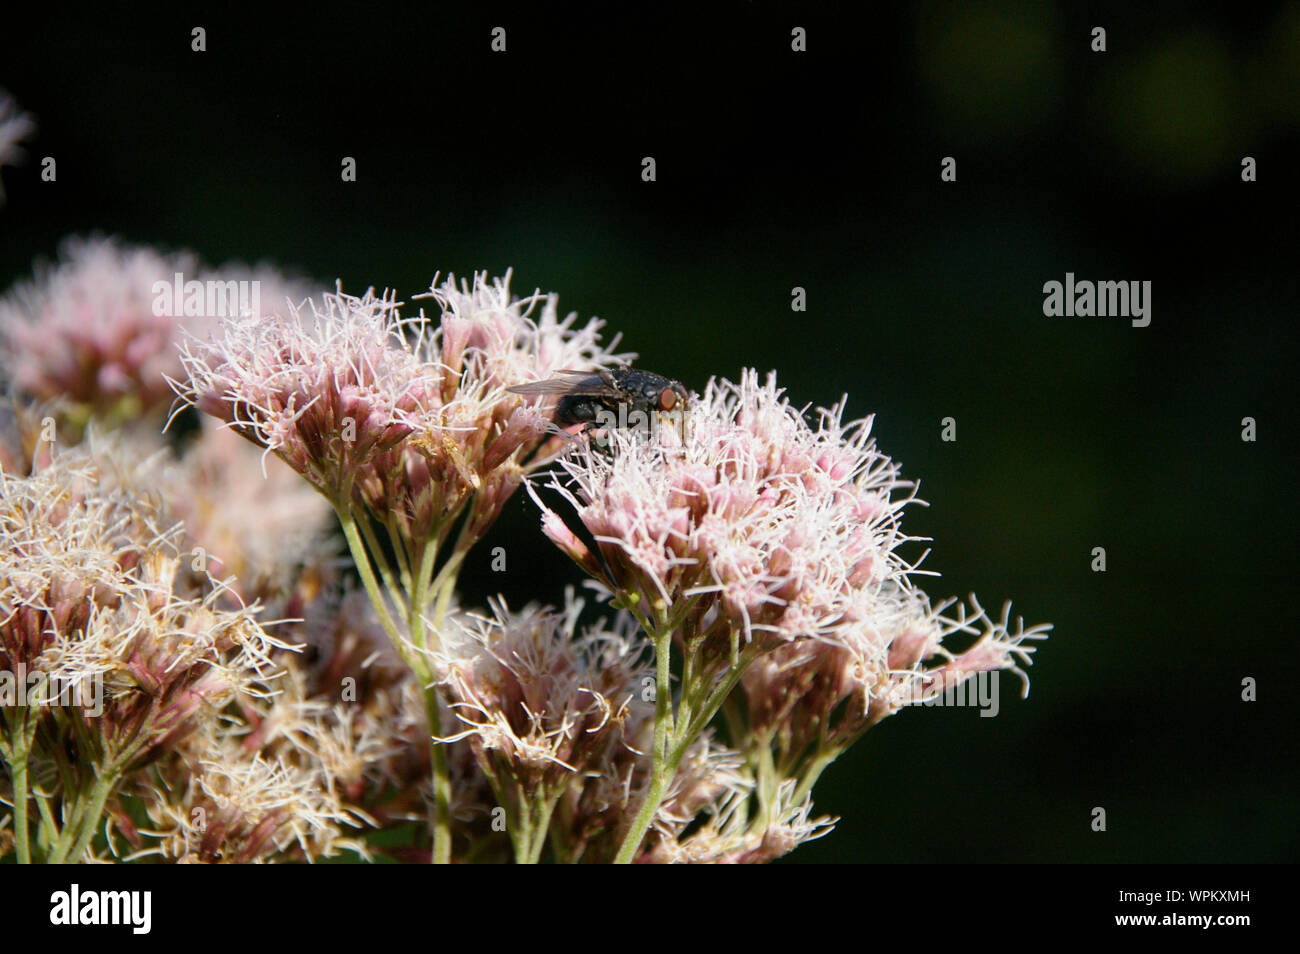 Mosca carnaria volare seduti su fiori thoroughwort blossoms/ Fliege sitzt auf Wasserdost Blüten Nahaufnahme Foto Stock